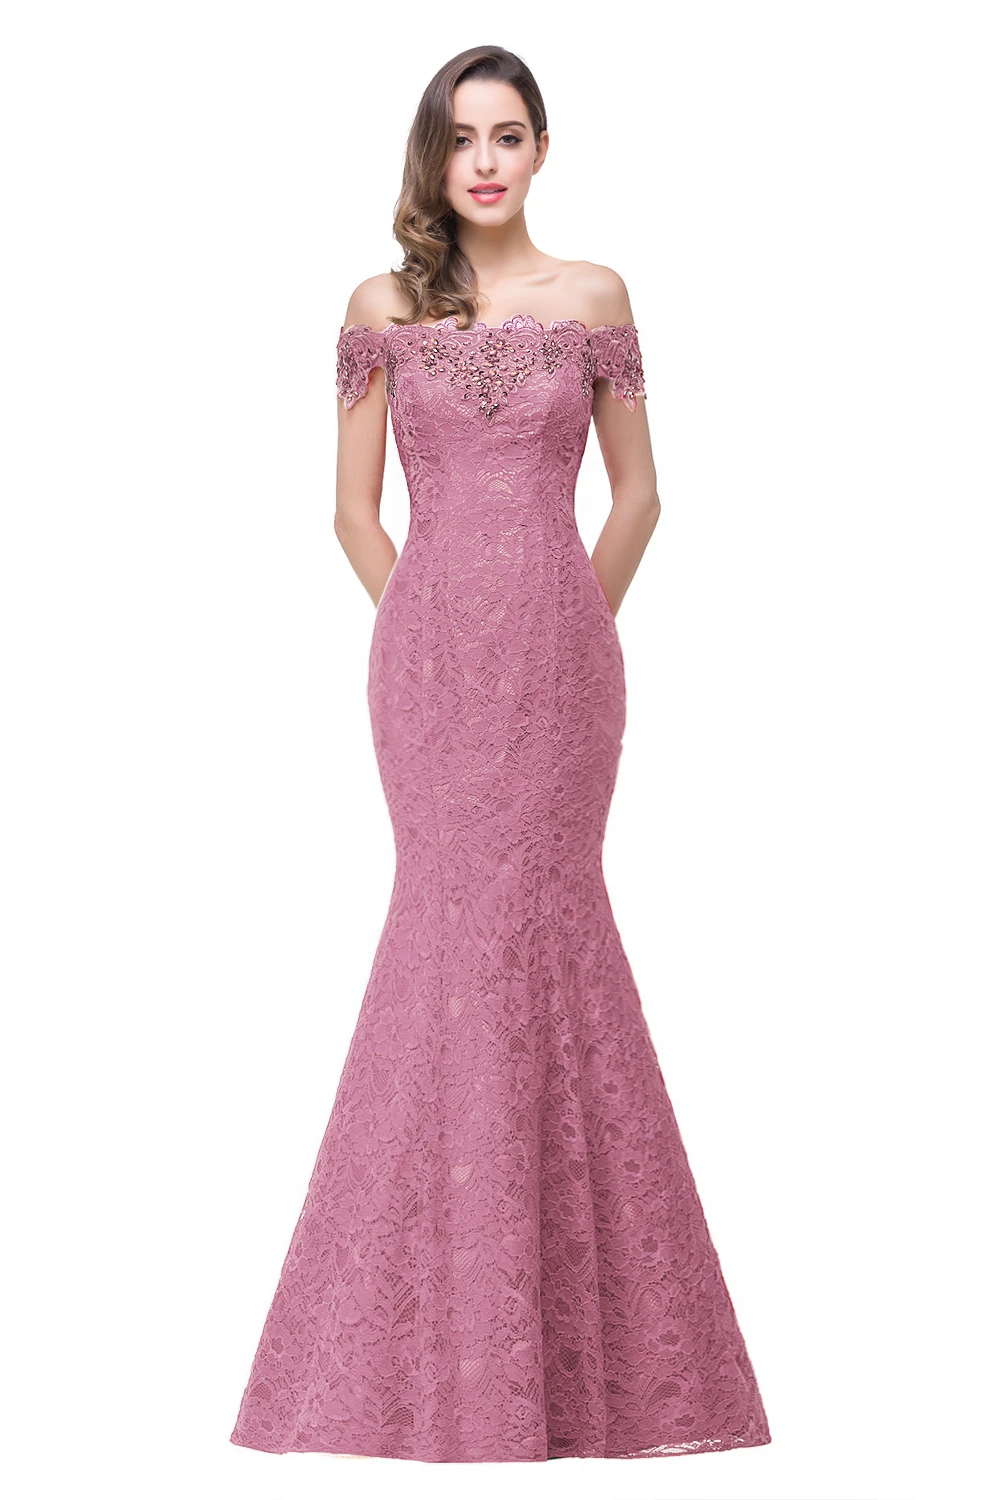 Misshow вечернее платье сексуальное длинное розовое кружевное вечернее платье Русалка с бисером Элегантное платье без рукавов с открытыми плечами robe de soiree